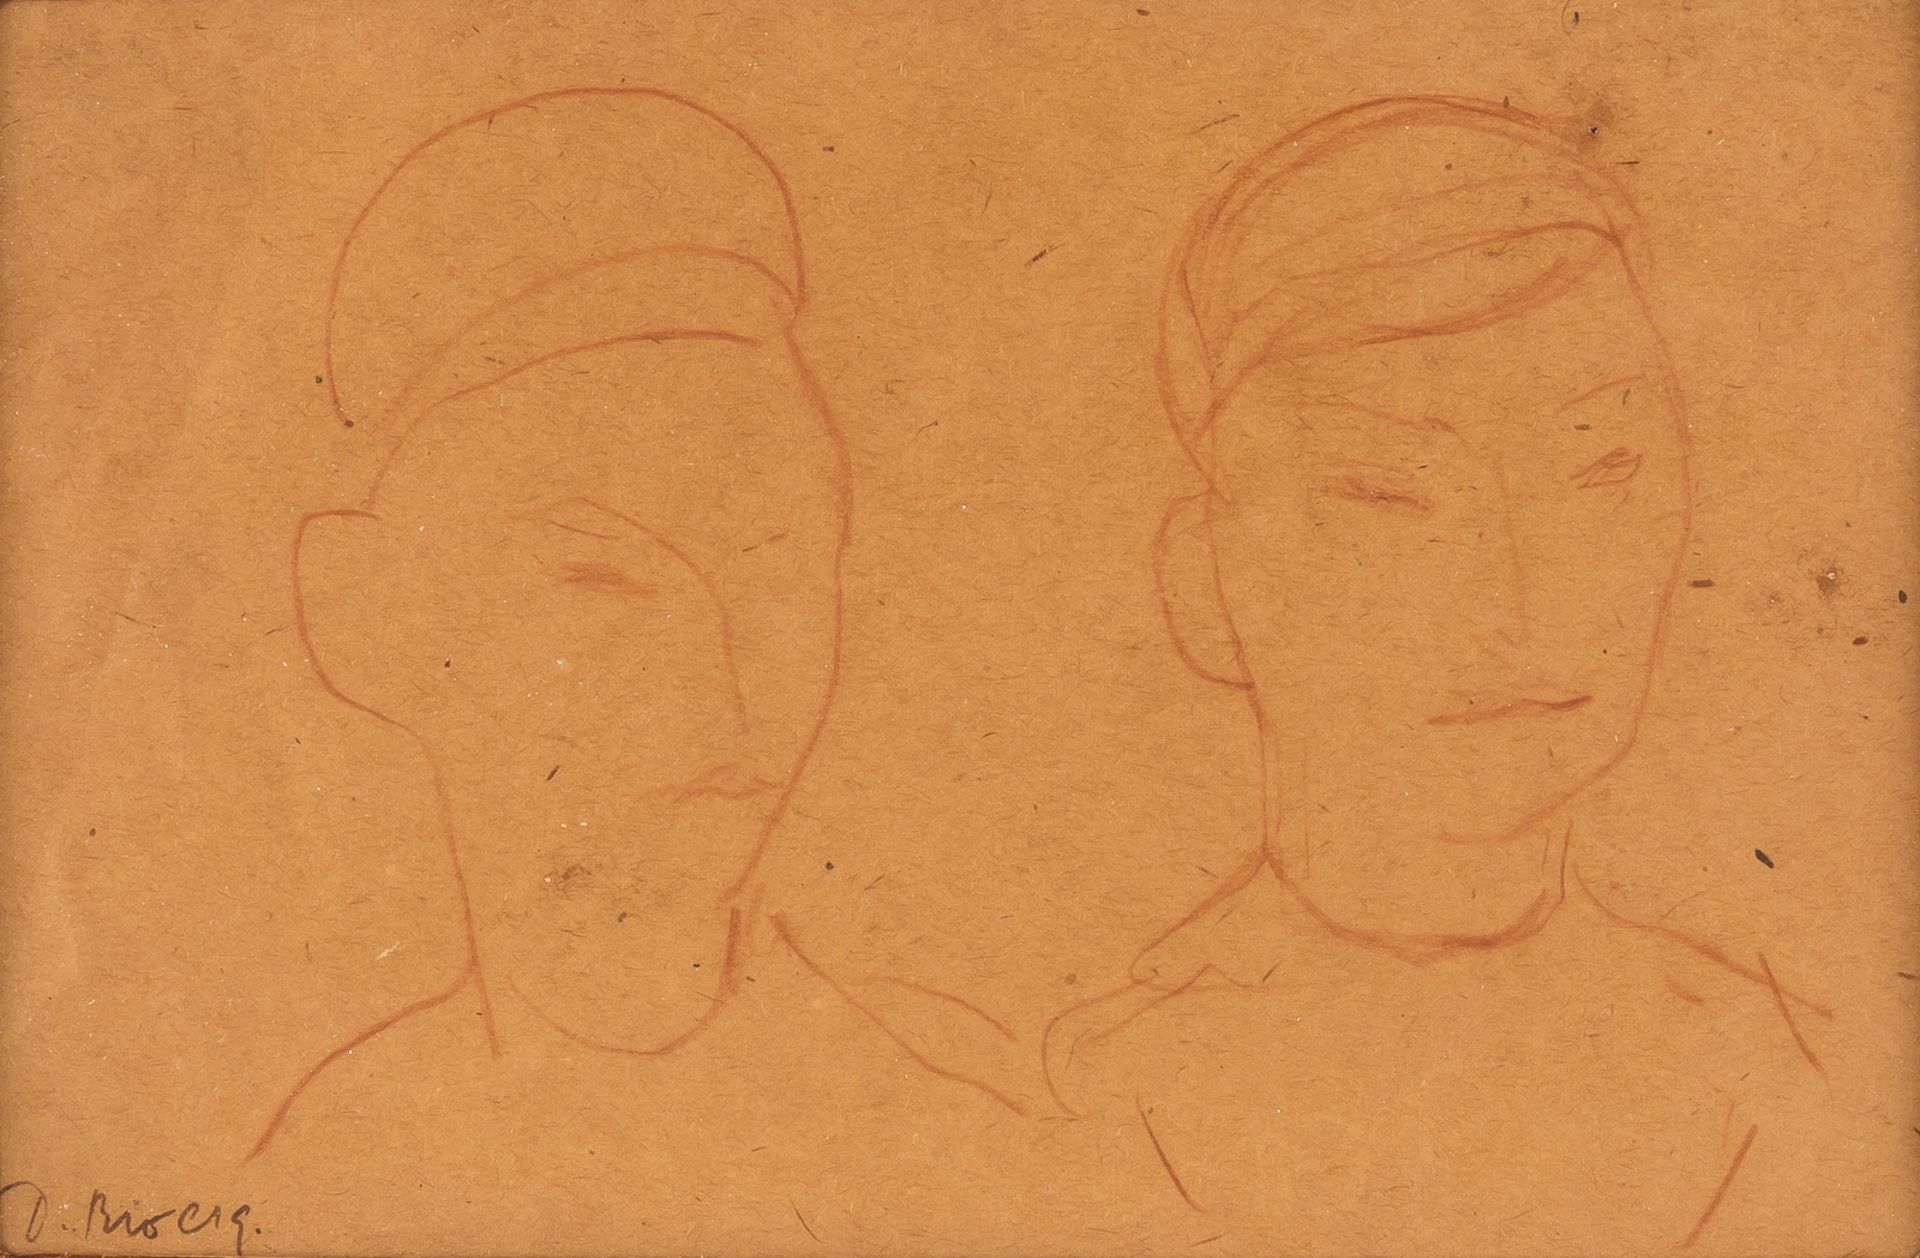 DIEGO RIVERA (MEXICAN 1886-1957)   Dibujo #14 ,  sanguine on paper 13 x 19 cm (5 1/8 x 7 1/2 in.) [